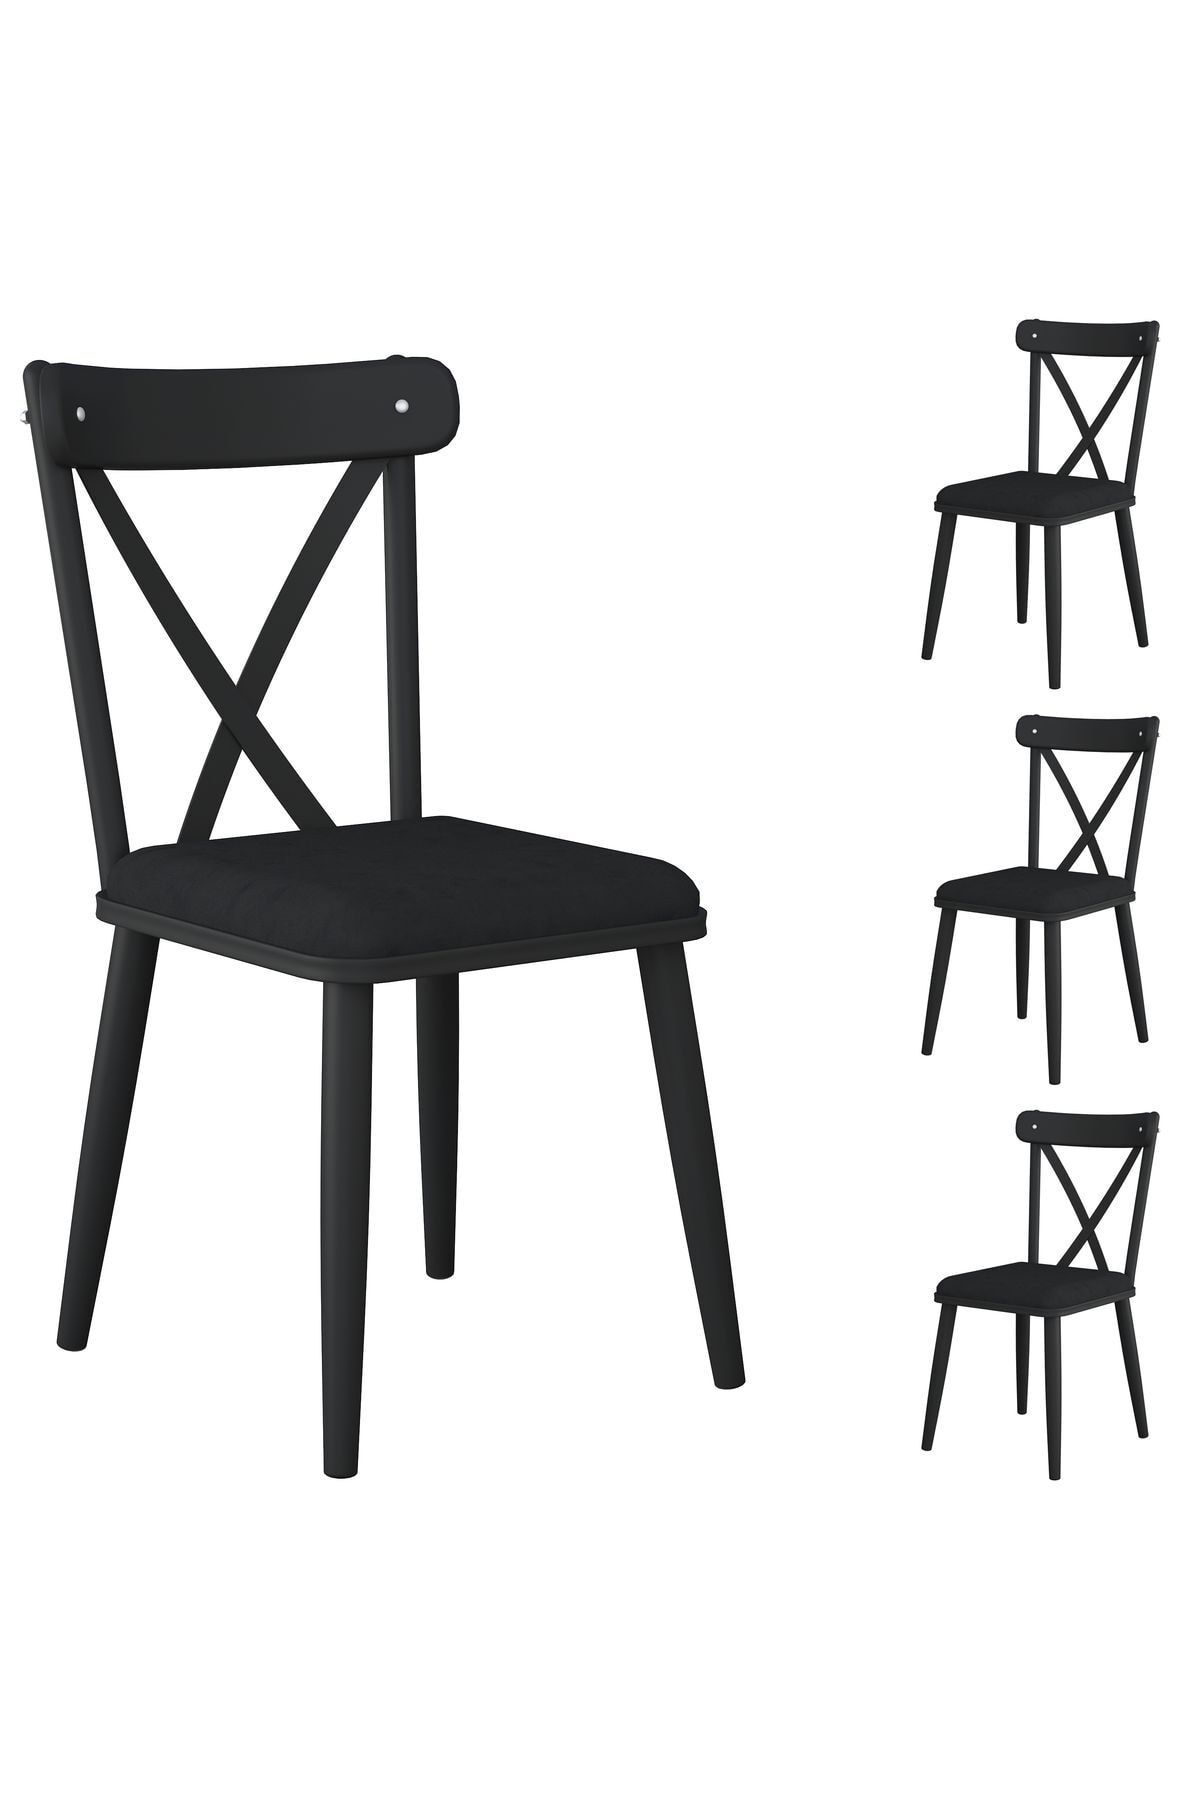 Rani Mobilya Rani Jb108 Metal Sandalye Thonet Sandalye 4'lü Mutfak Yemek Masası Sandalyesi Siyah